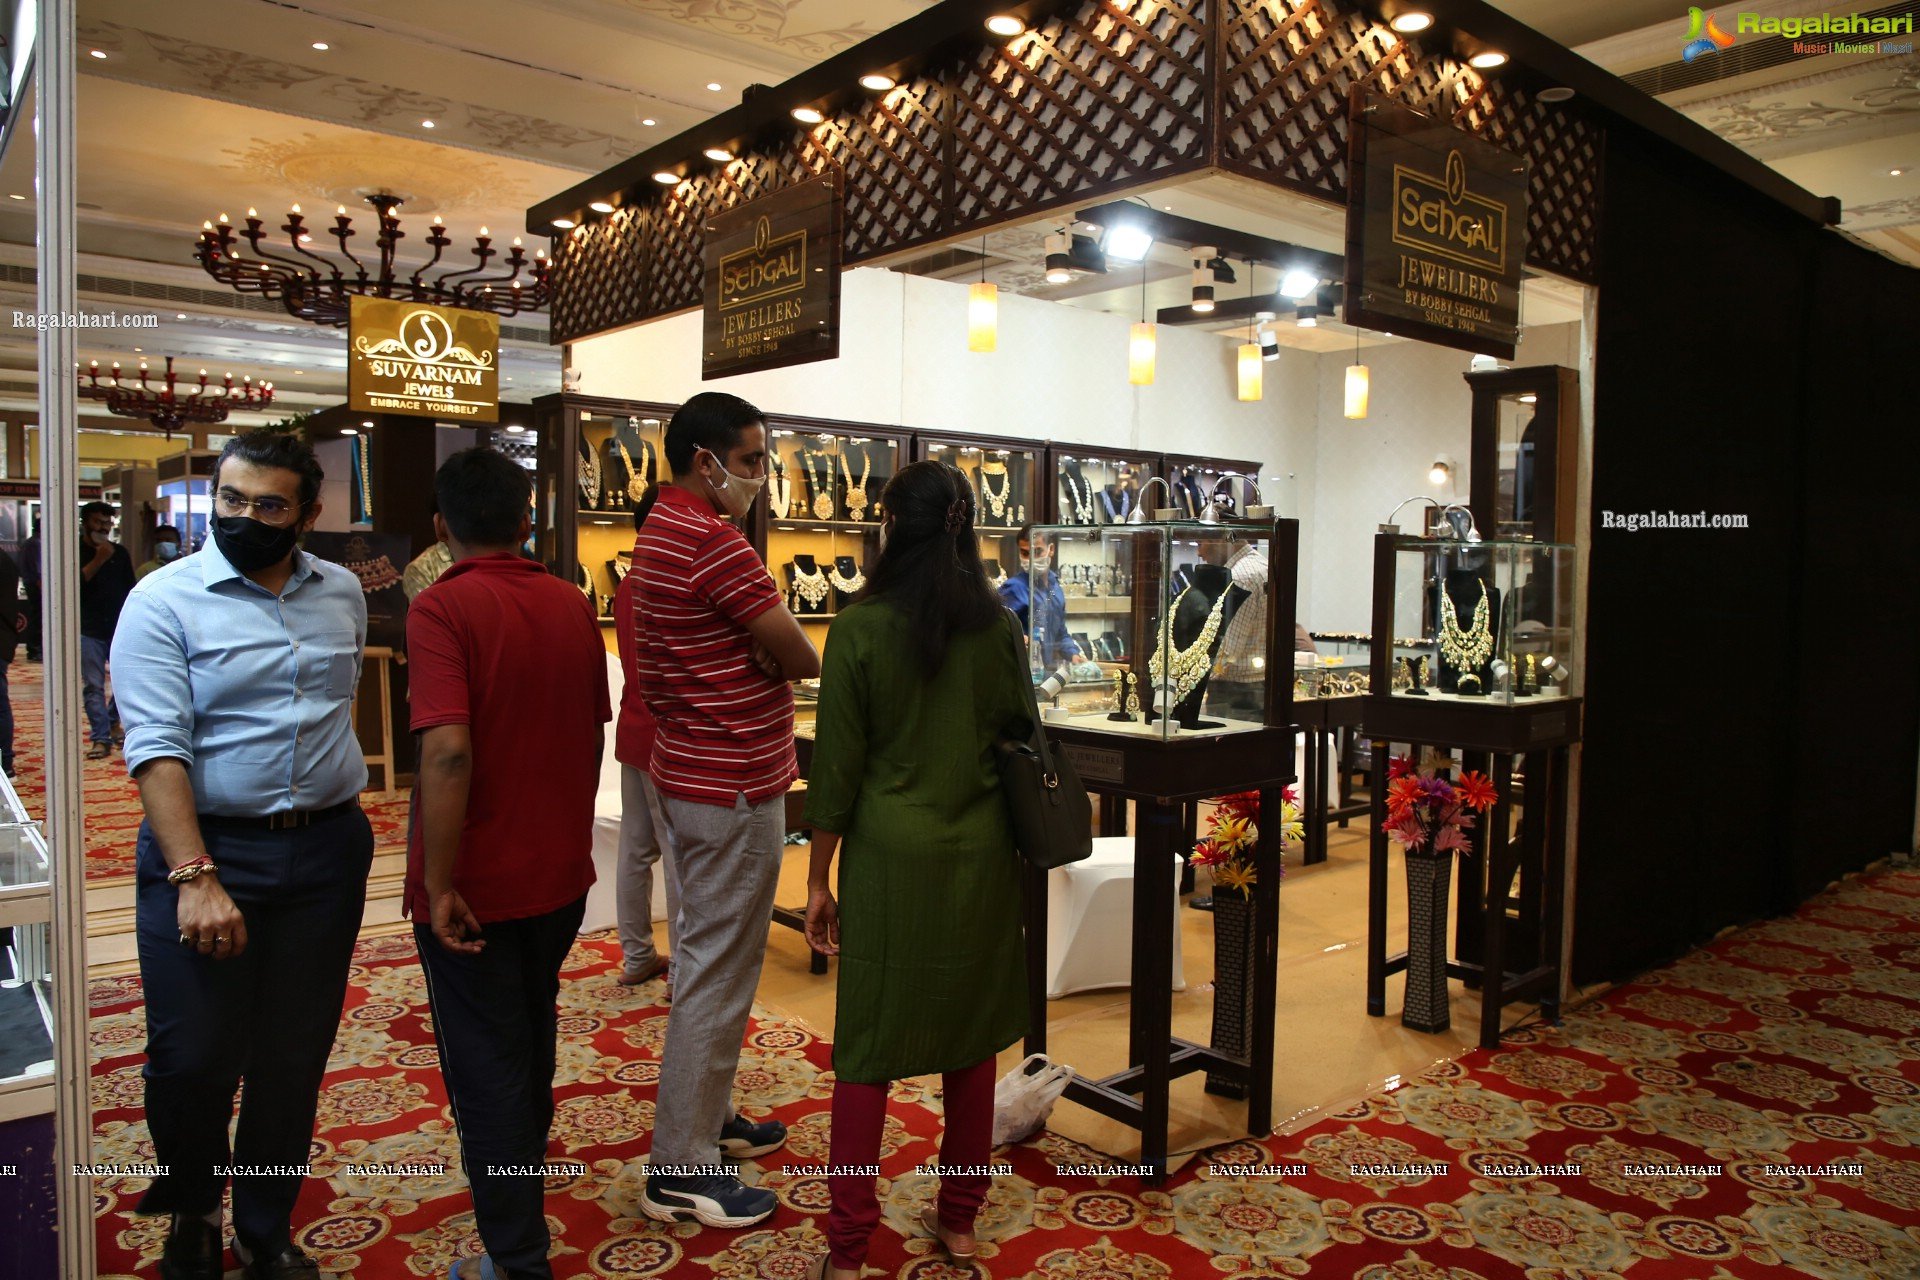 Zak Jewels Expo 136th Edition Kicks Off at Taj Krishna